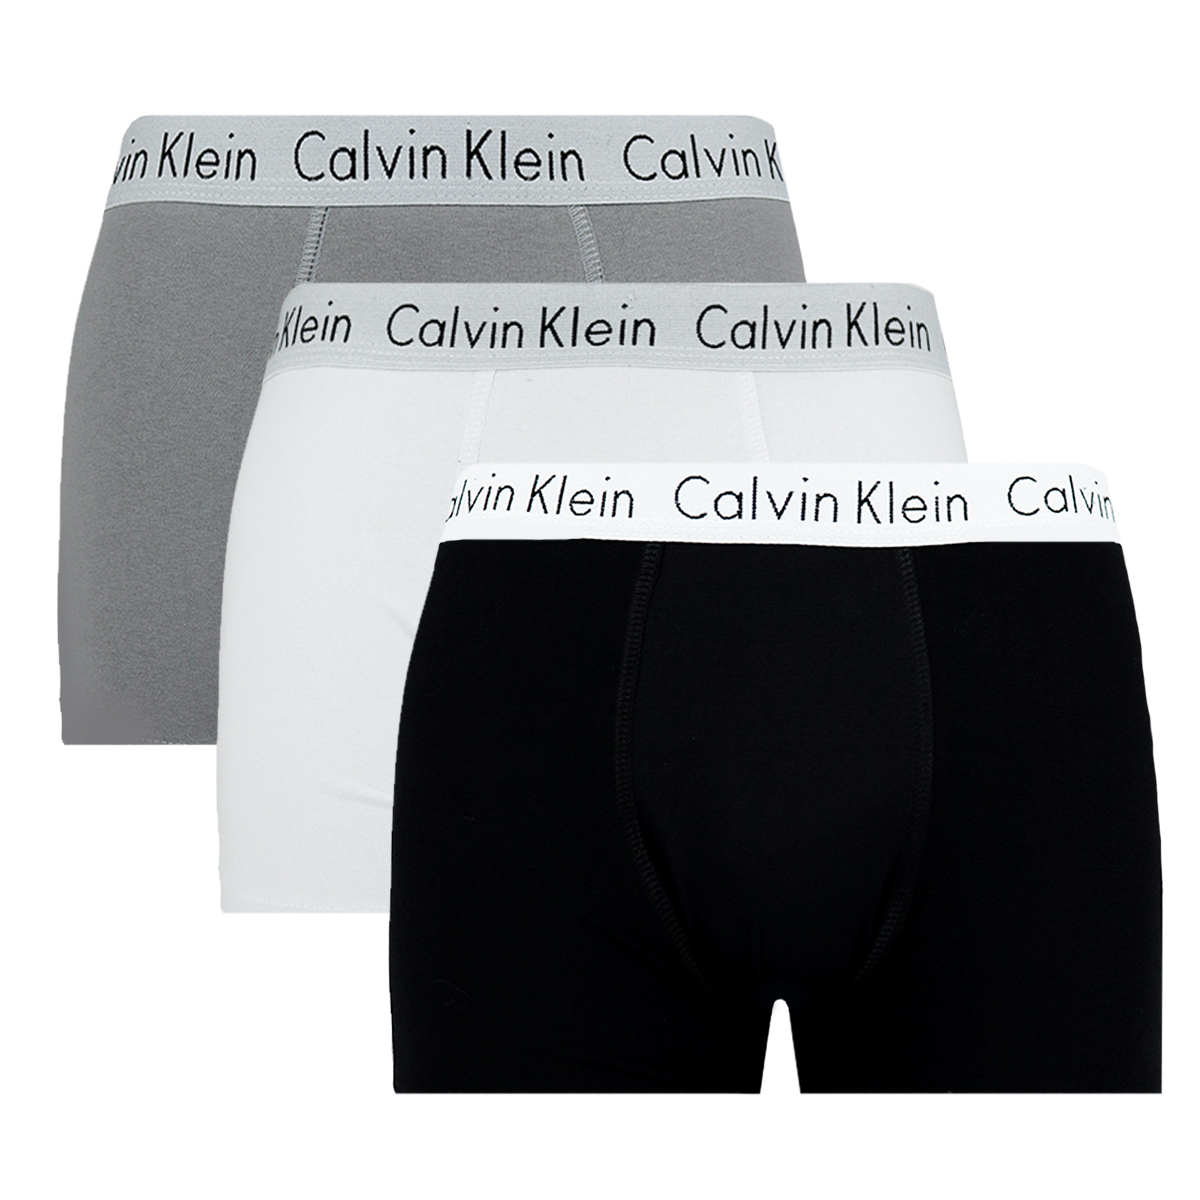 Cuecas Calvin Klein: conheças suas principais características